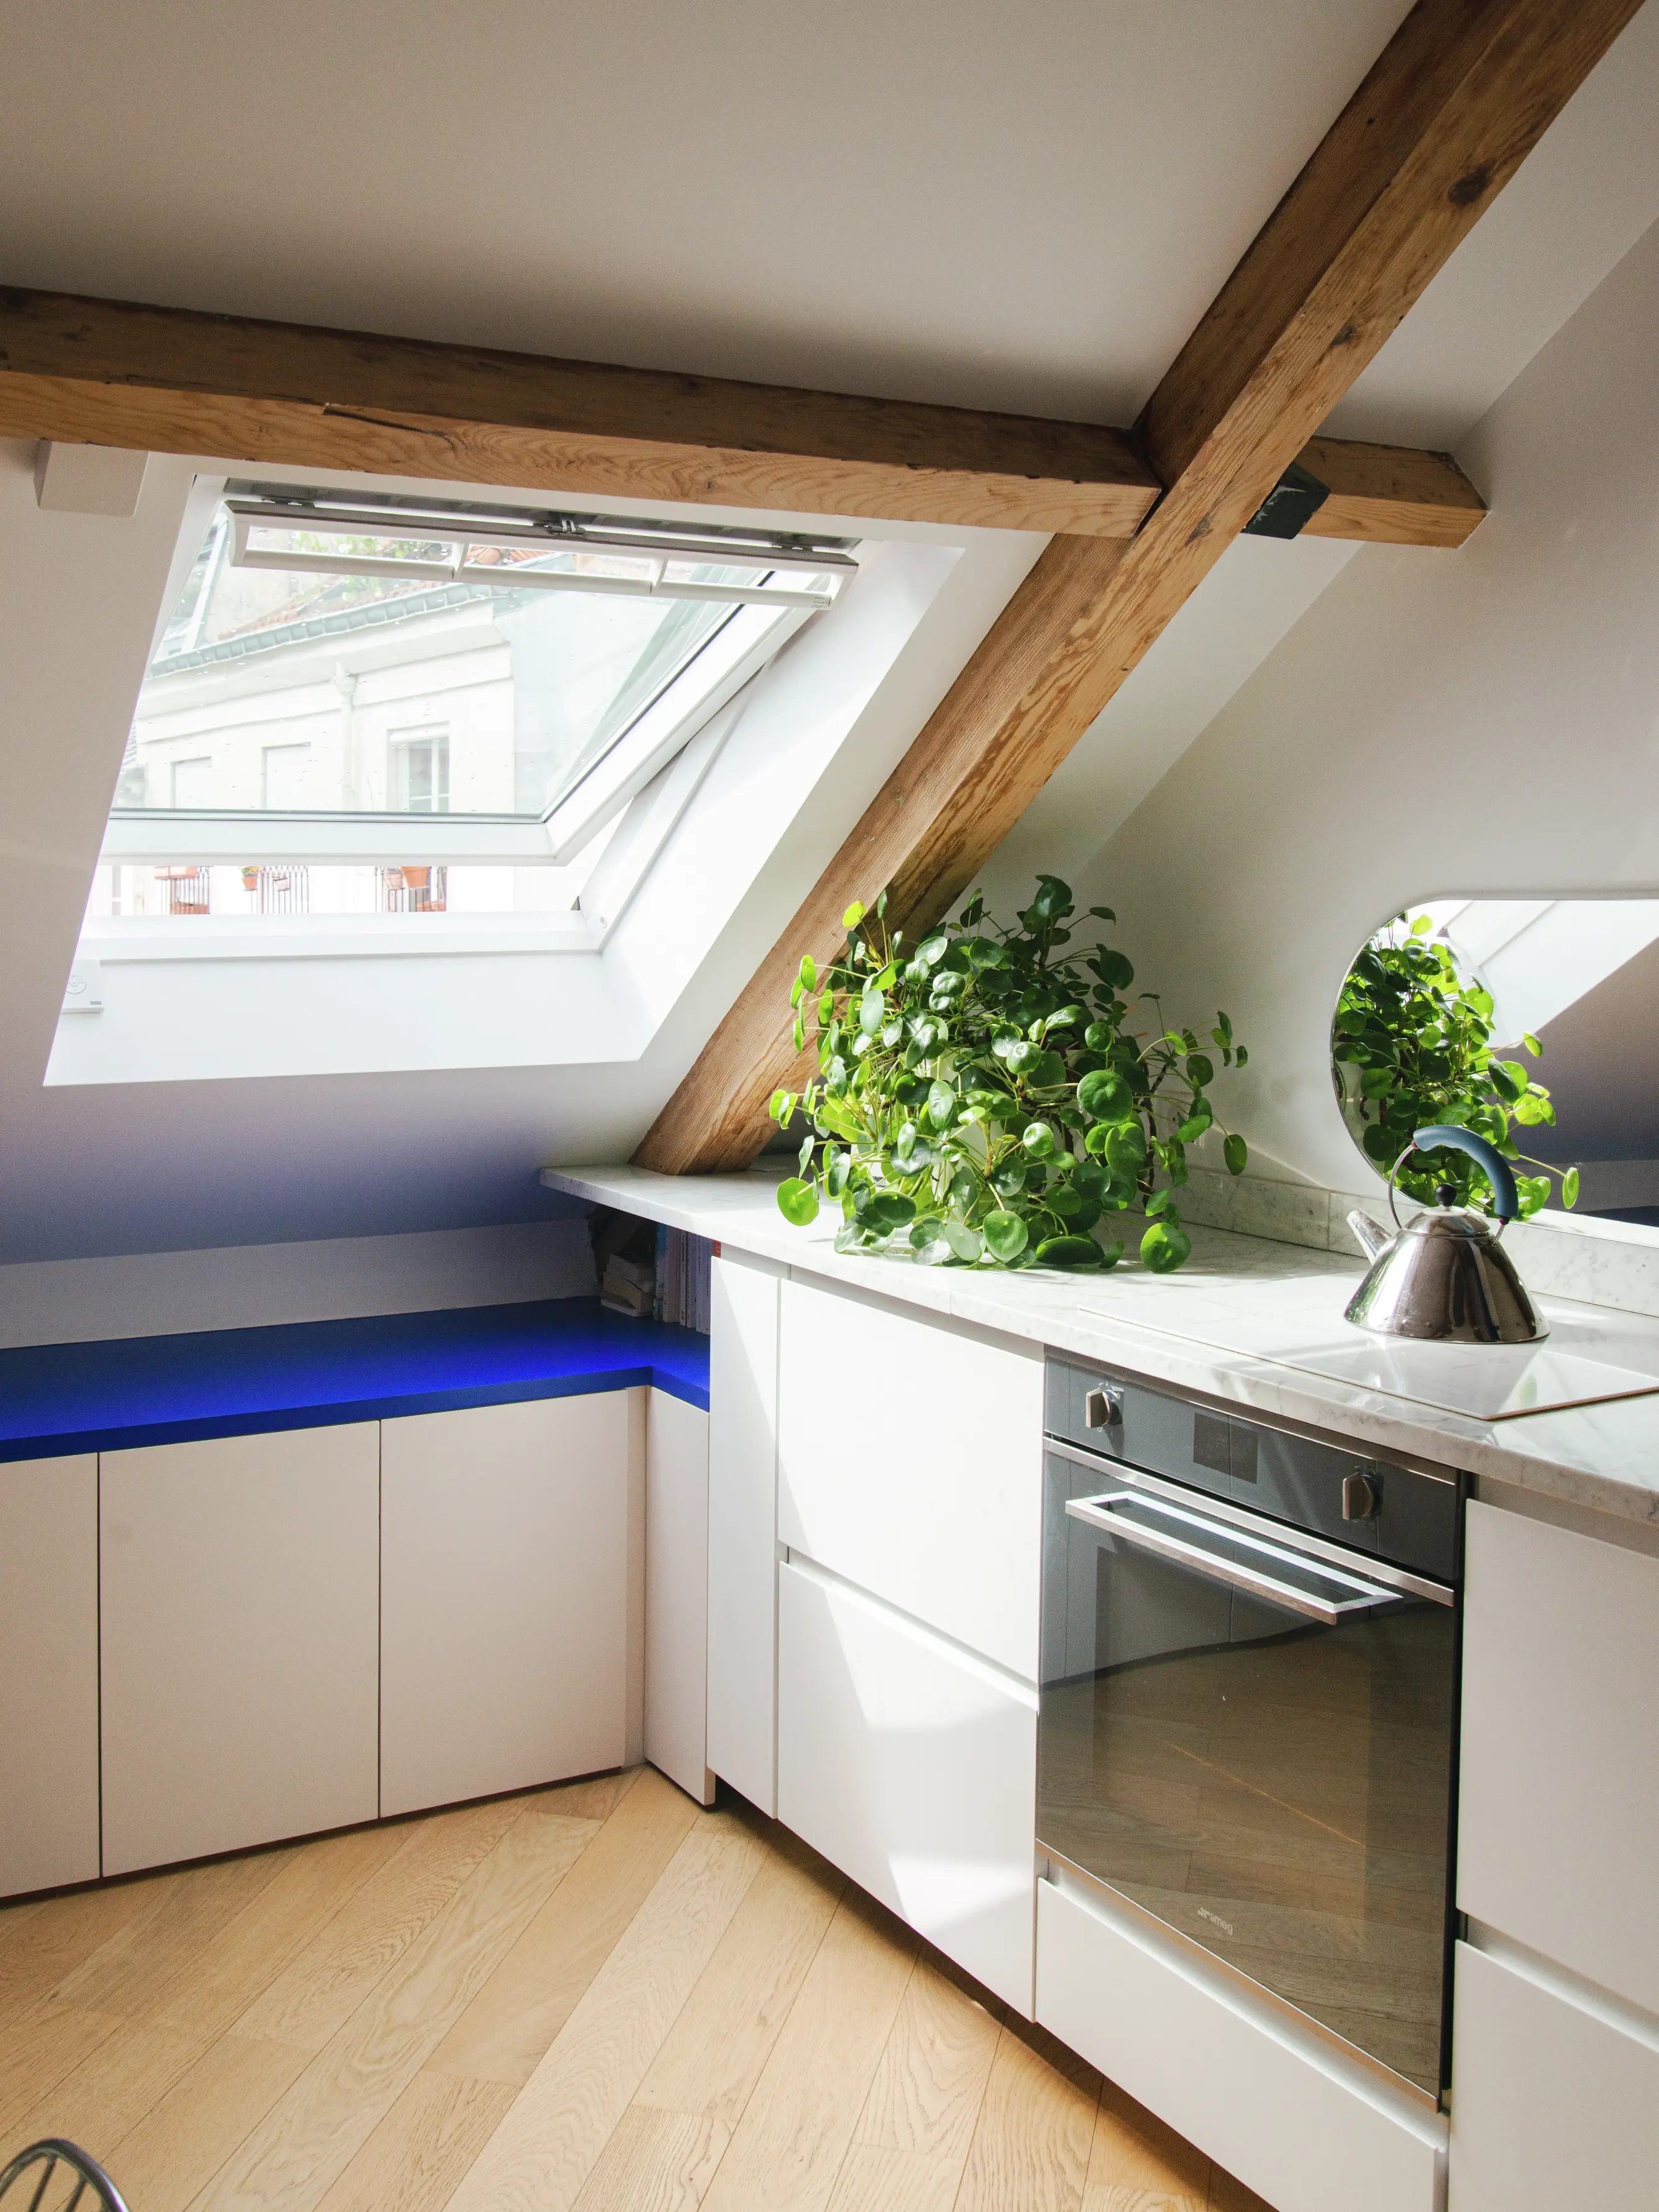 Cuisine contemporaine avec fenêtre de toit VELUX, armoires blanches et verdure.